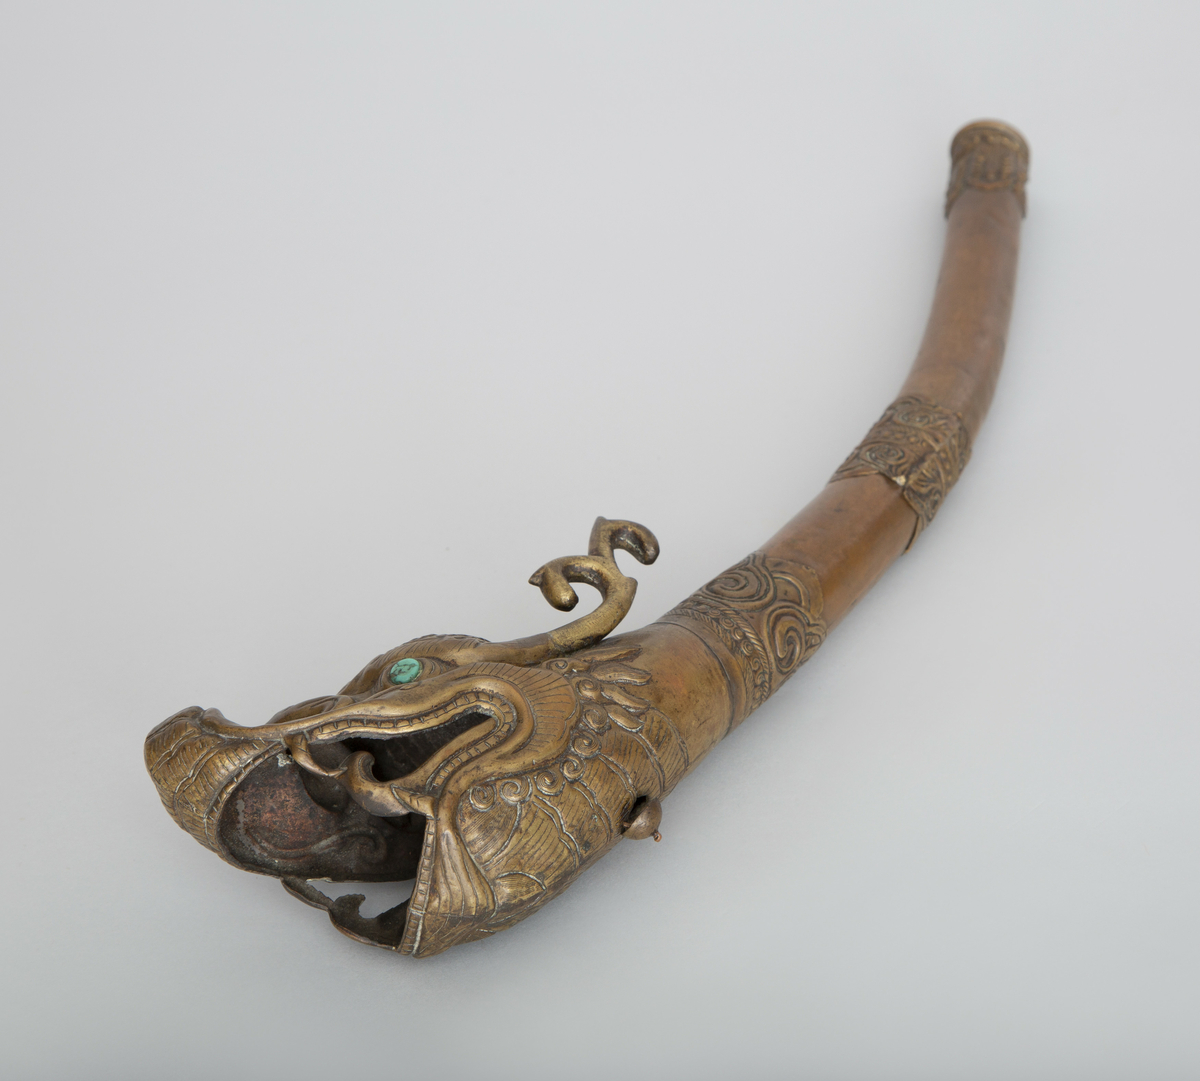 Blåseinstrument av kobber, med munnstykke, tverrbånd og klokkestykke av ornamentert messing. Klokkestykket har form av et dragehode med oppsperret gap. Øyer av turkis edelsten.